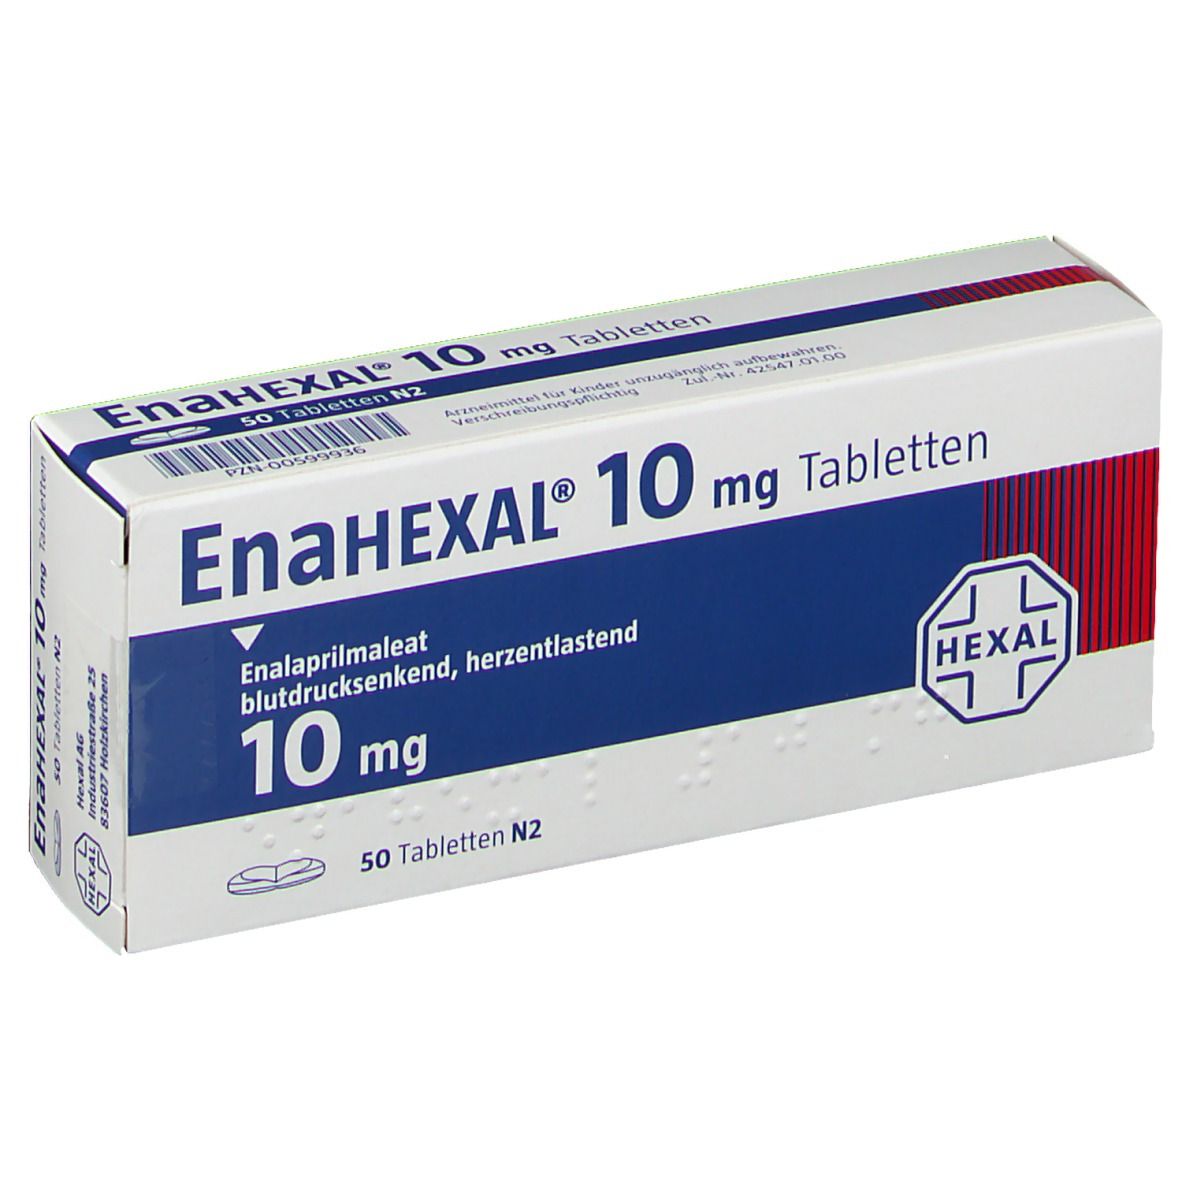 Enahexal 10 mg Tabletten